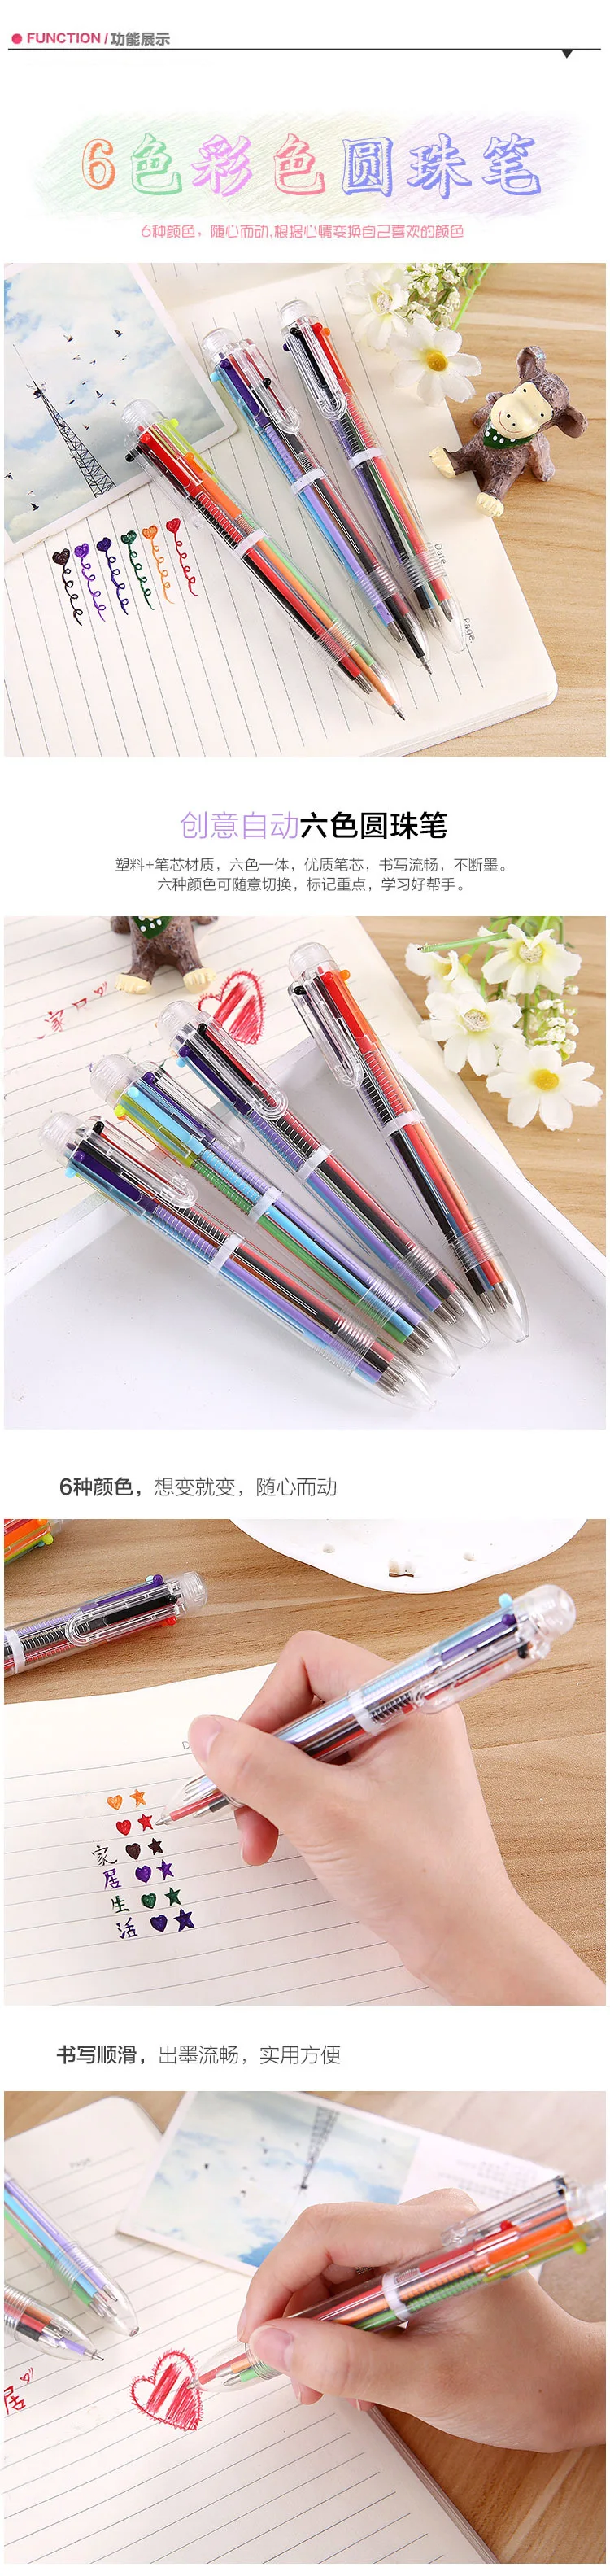 Южная Корея креативными рисунками мульти-Цвет Прозрачный 6-цветная шариковая ручка нажатие ручки Цвет школьный канцелярская